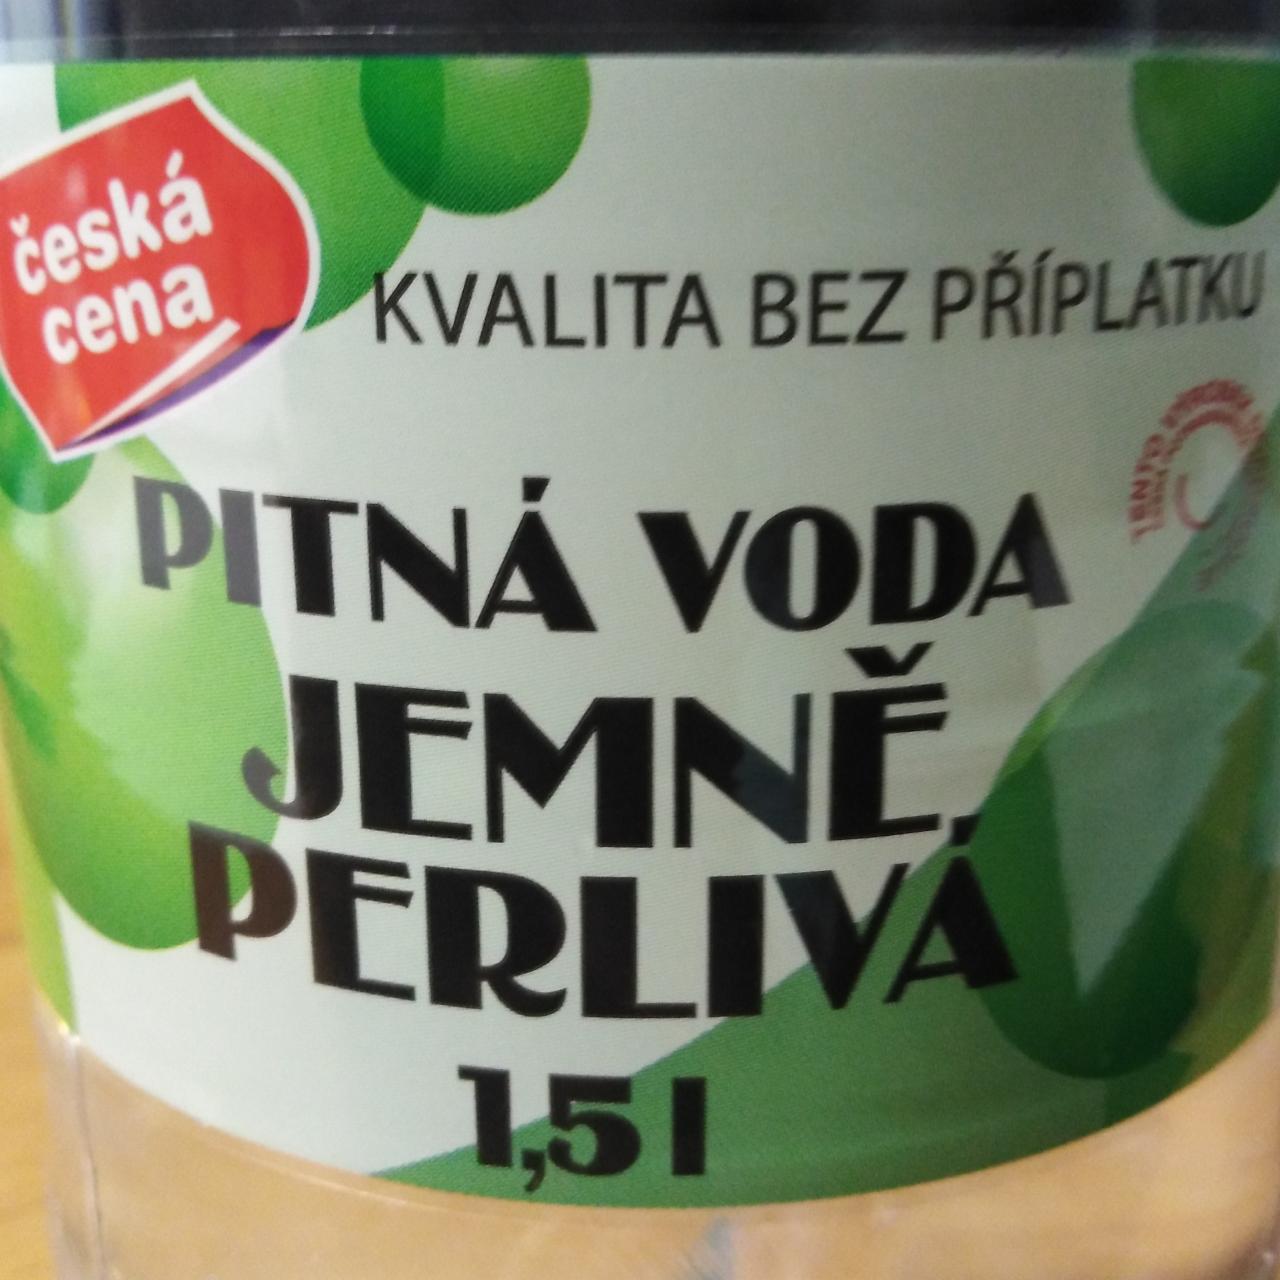 Fotografie - Pitná voda Jemně perlivá Česká cena